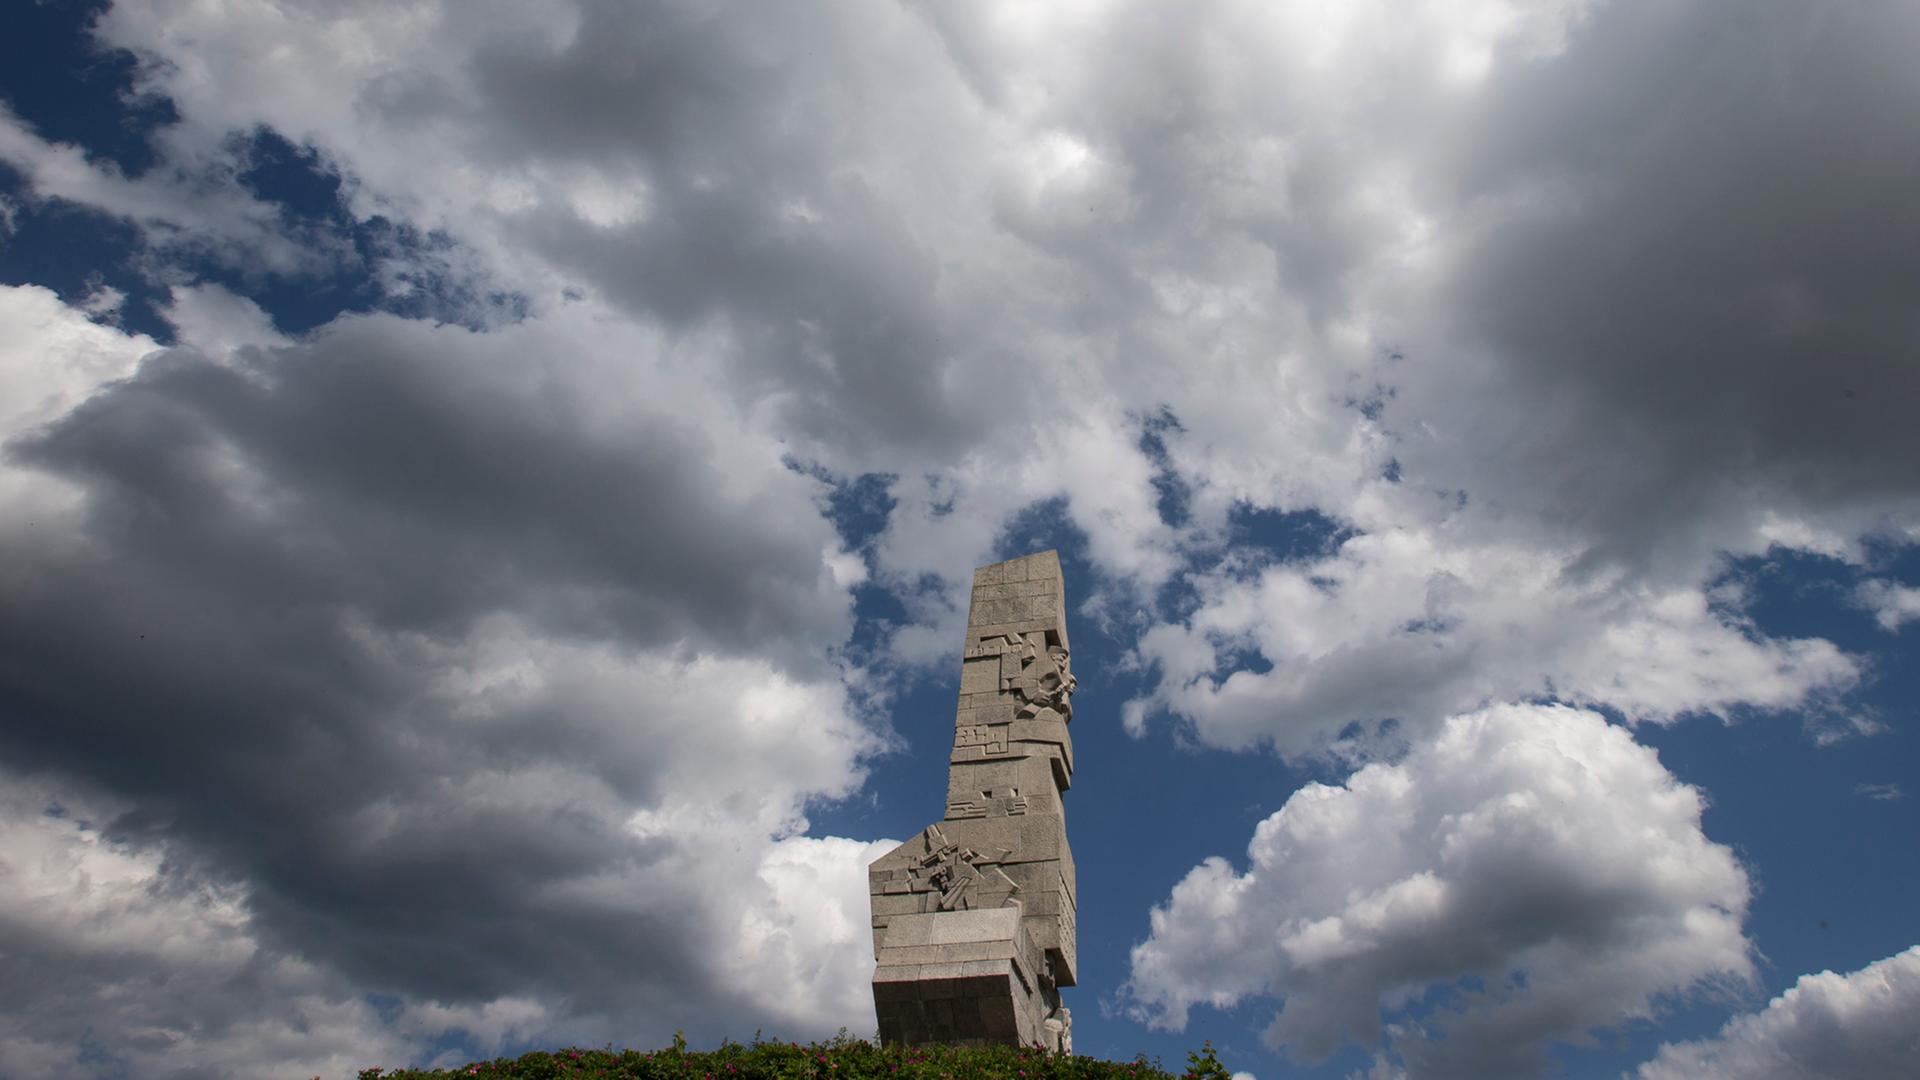 Das Denkmal "Westerplatte" zu Ehren der polnischen Verteidiger in der gleichnamigen Gedenkstätte in Danzig in Polen, aufgenommen am 17.06.2012.